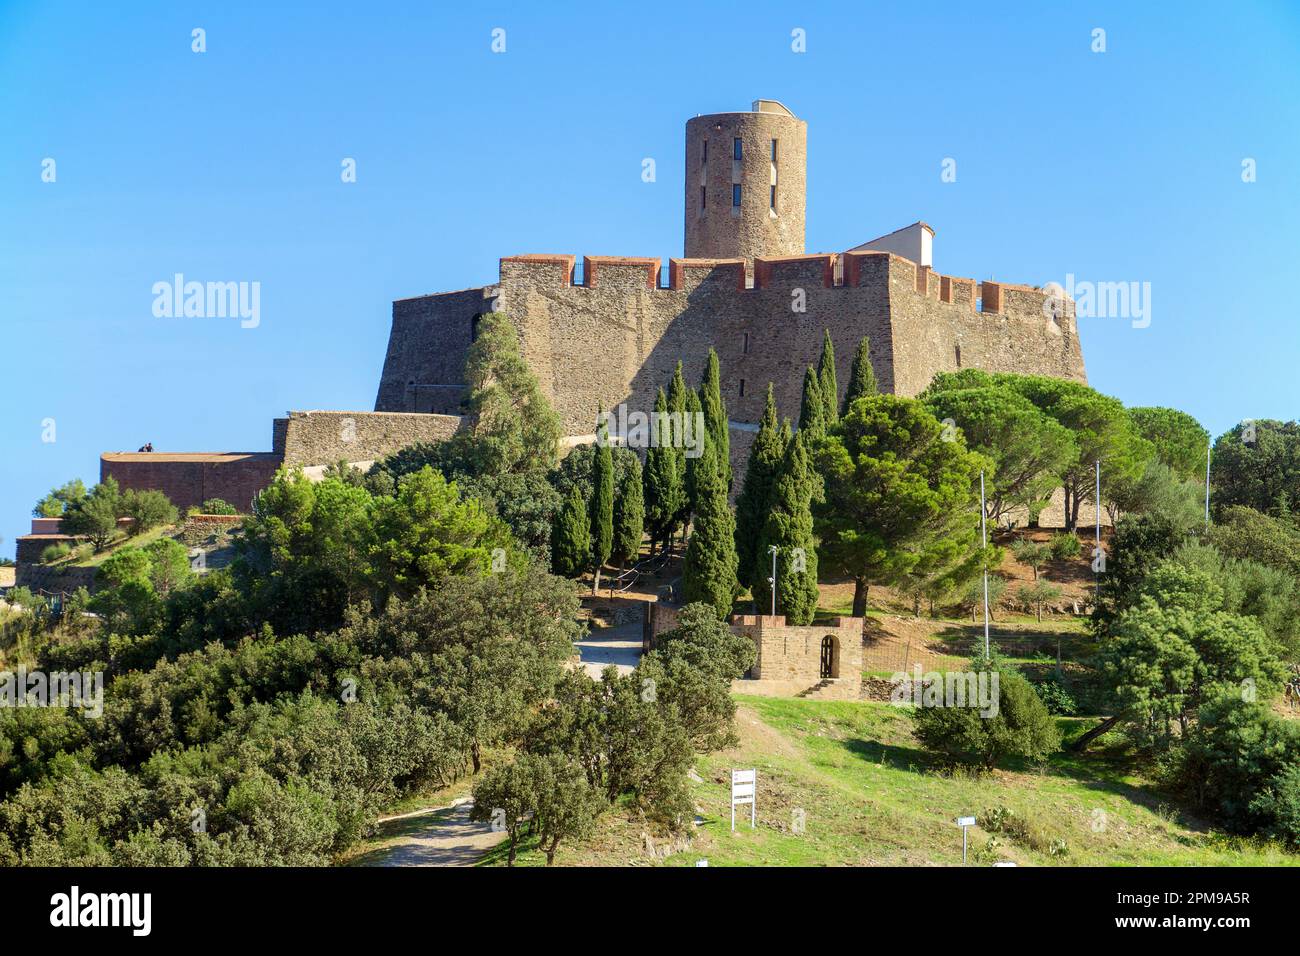 Die alte mittelalterliche Festung Saint-Elme auf einem Hügel zwischen Collioure und Port Vendres, Pyrénées-Orientales, Languedoc-Roussillon, Südfrankreich, Frankreich, Eu Stockfoto